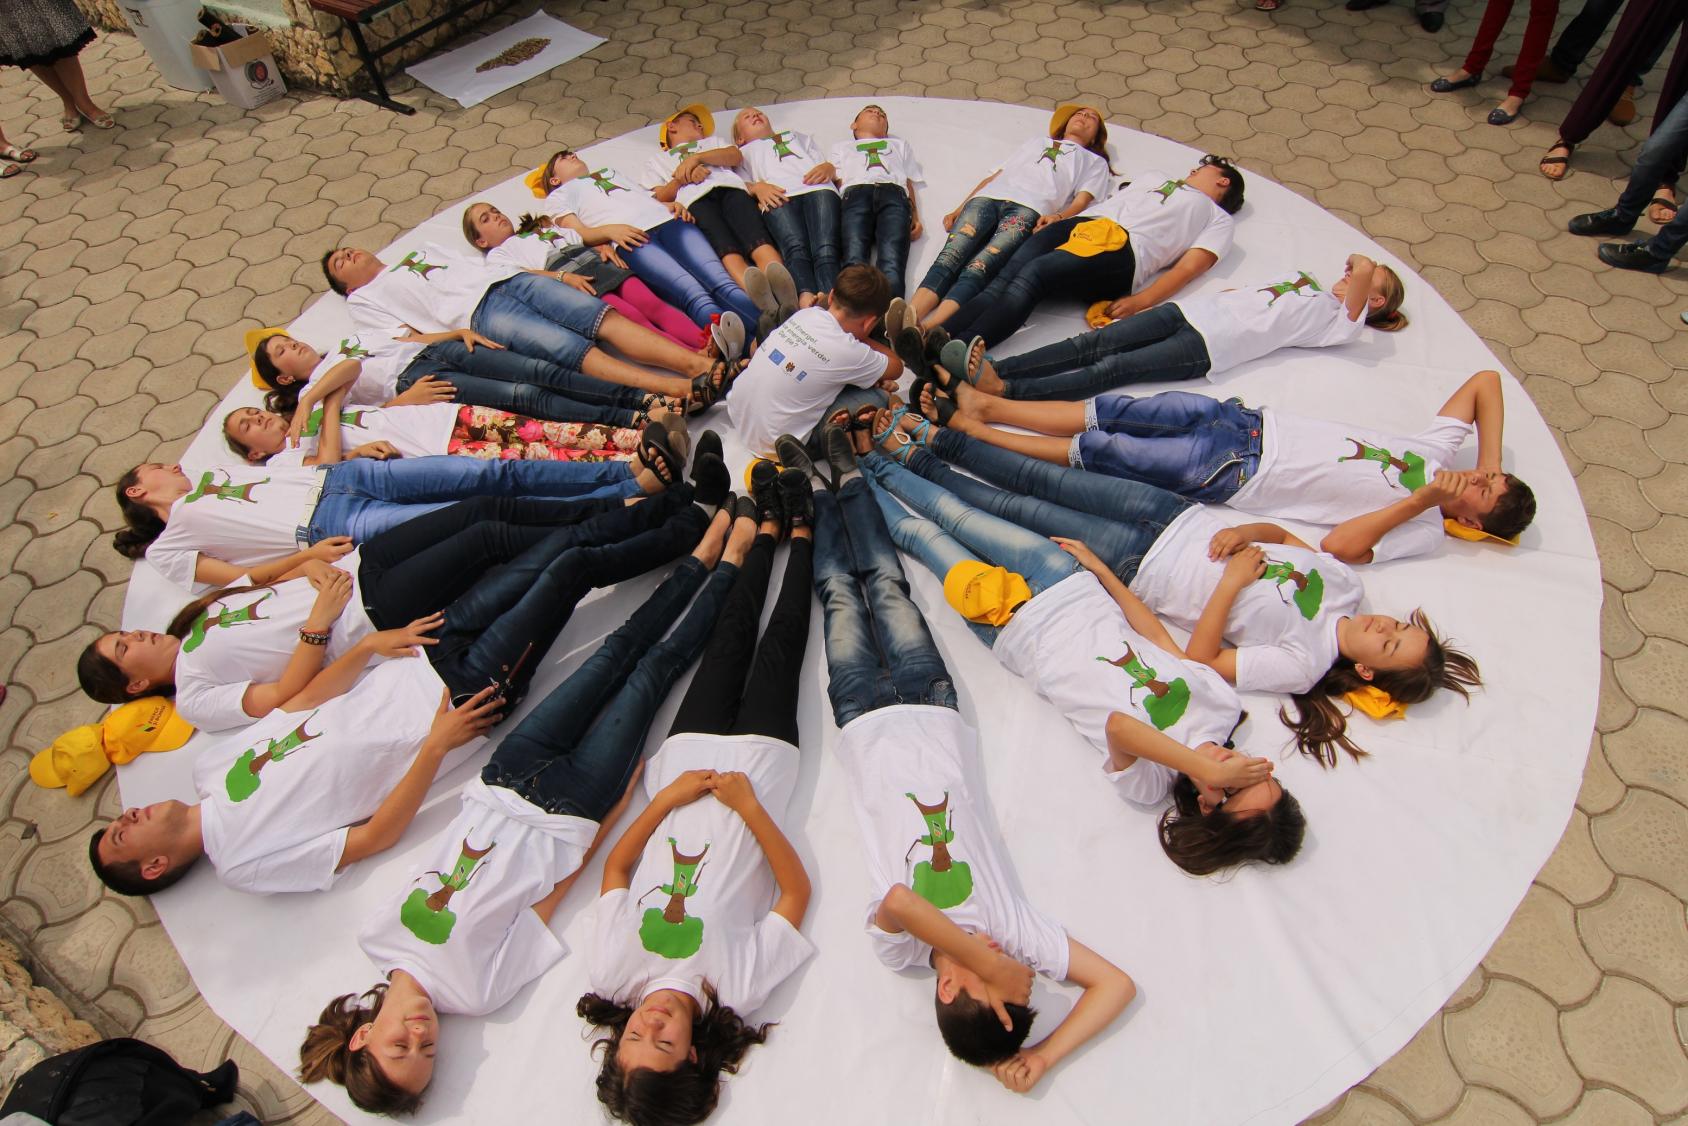 Jóvenes acostados formando un círculo sobre una tela blanca circular.